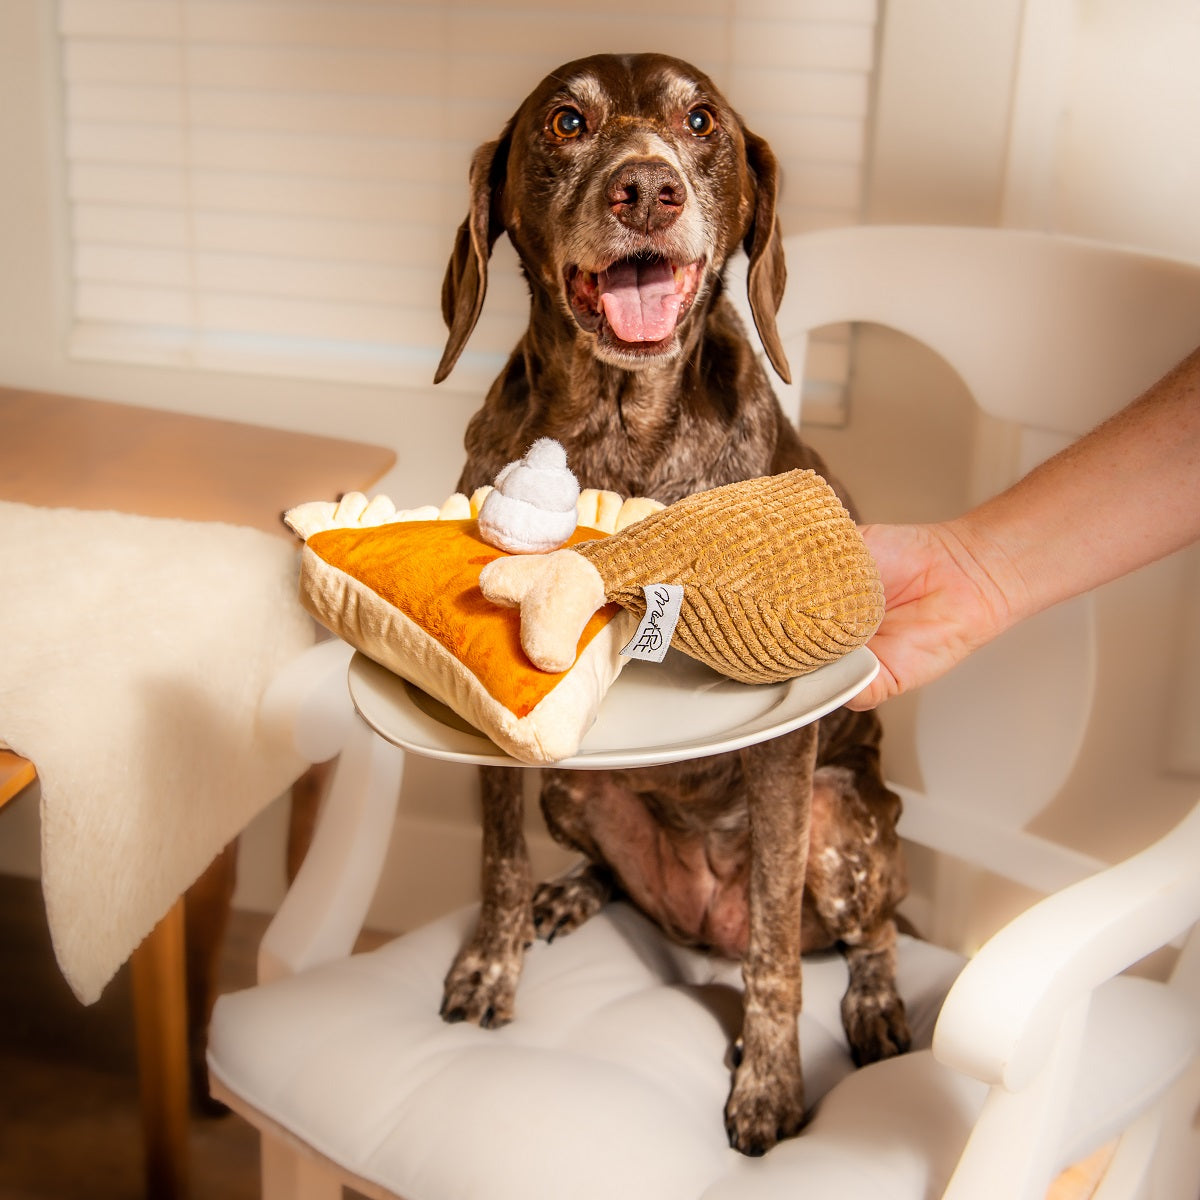 Midlee Thanksgiving Meal Dog Toy Set - Pumpkin Pie & Turkey Leg